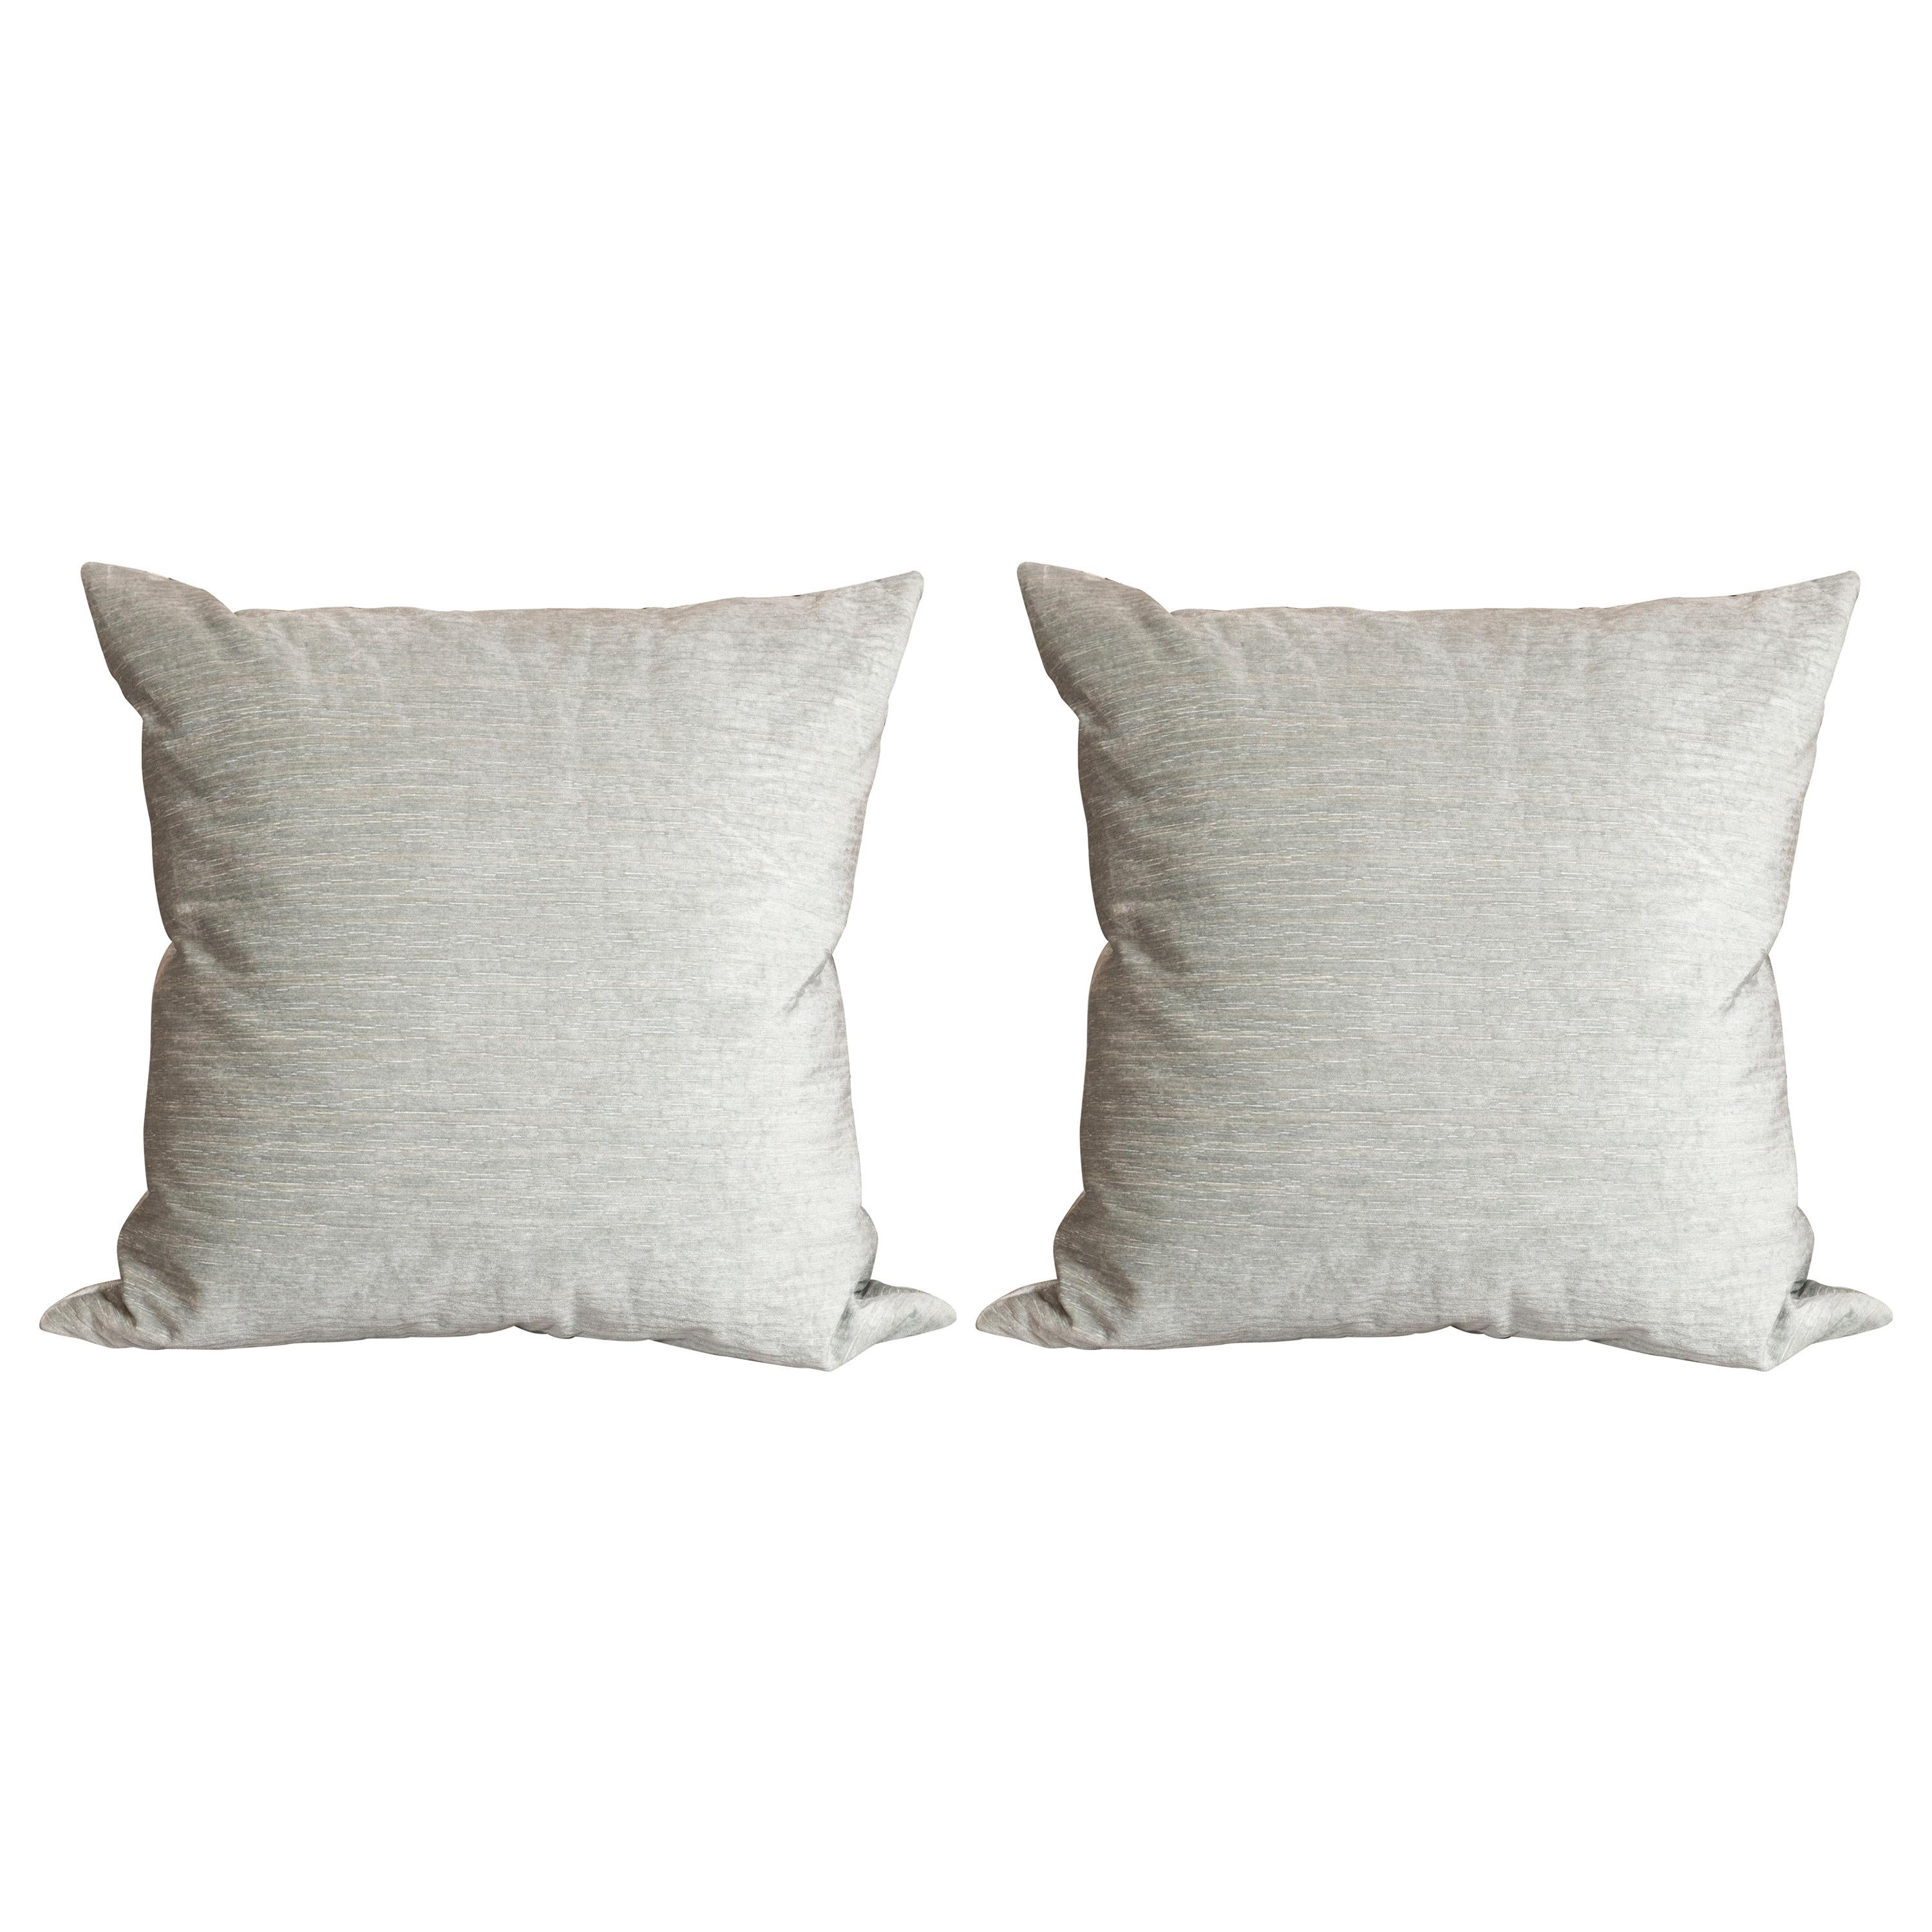 Pair of Modernist Pillows in Striated Sea Foam Velvet For Sale